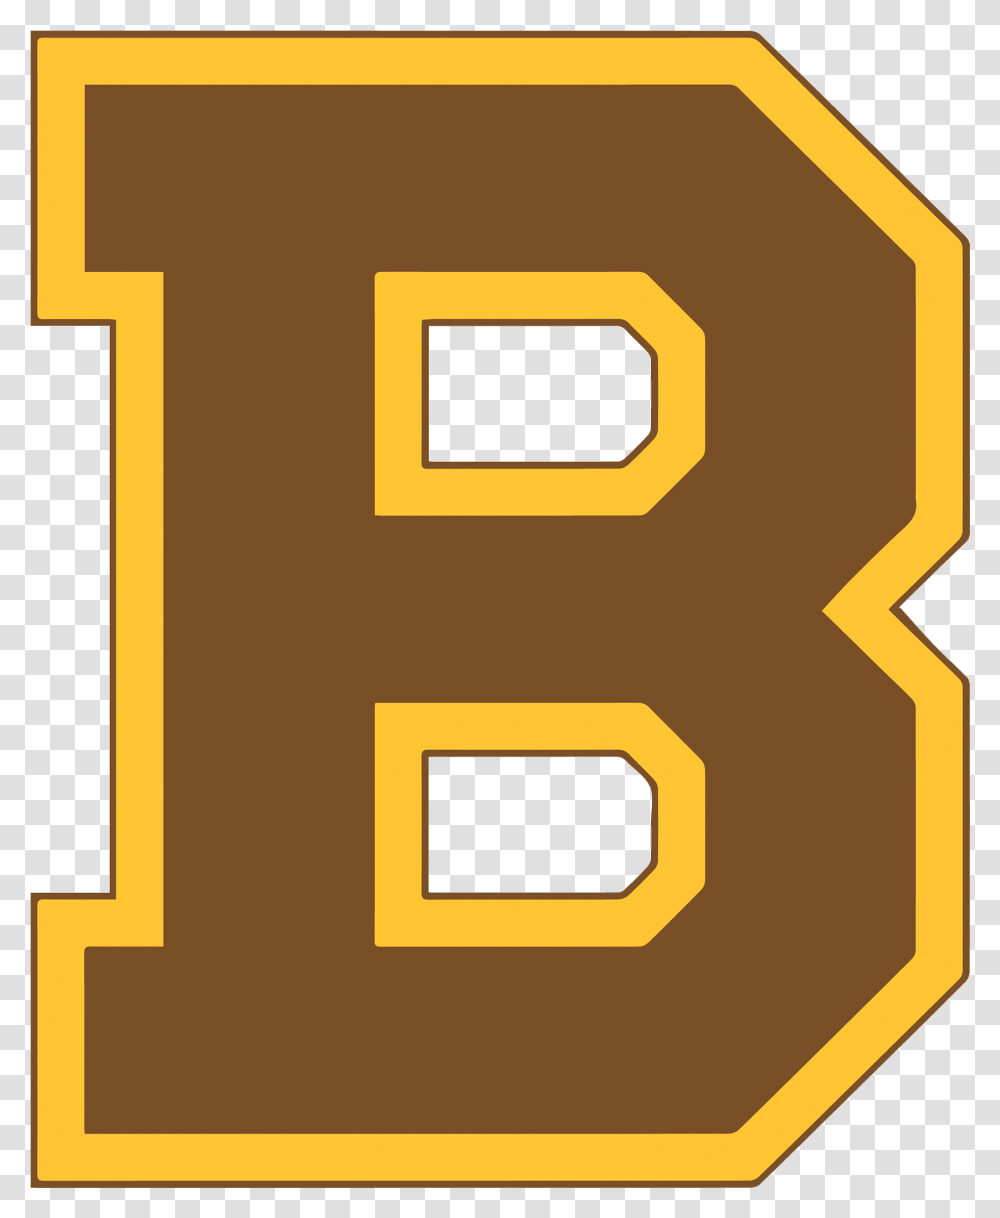 Boston Bruins 1932 Logo, Number, Label Transparent Png